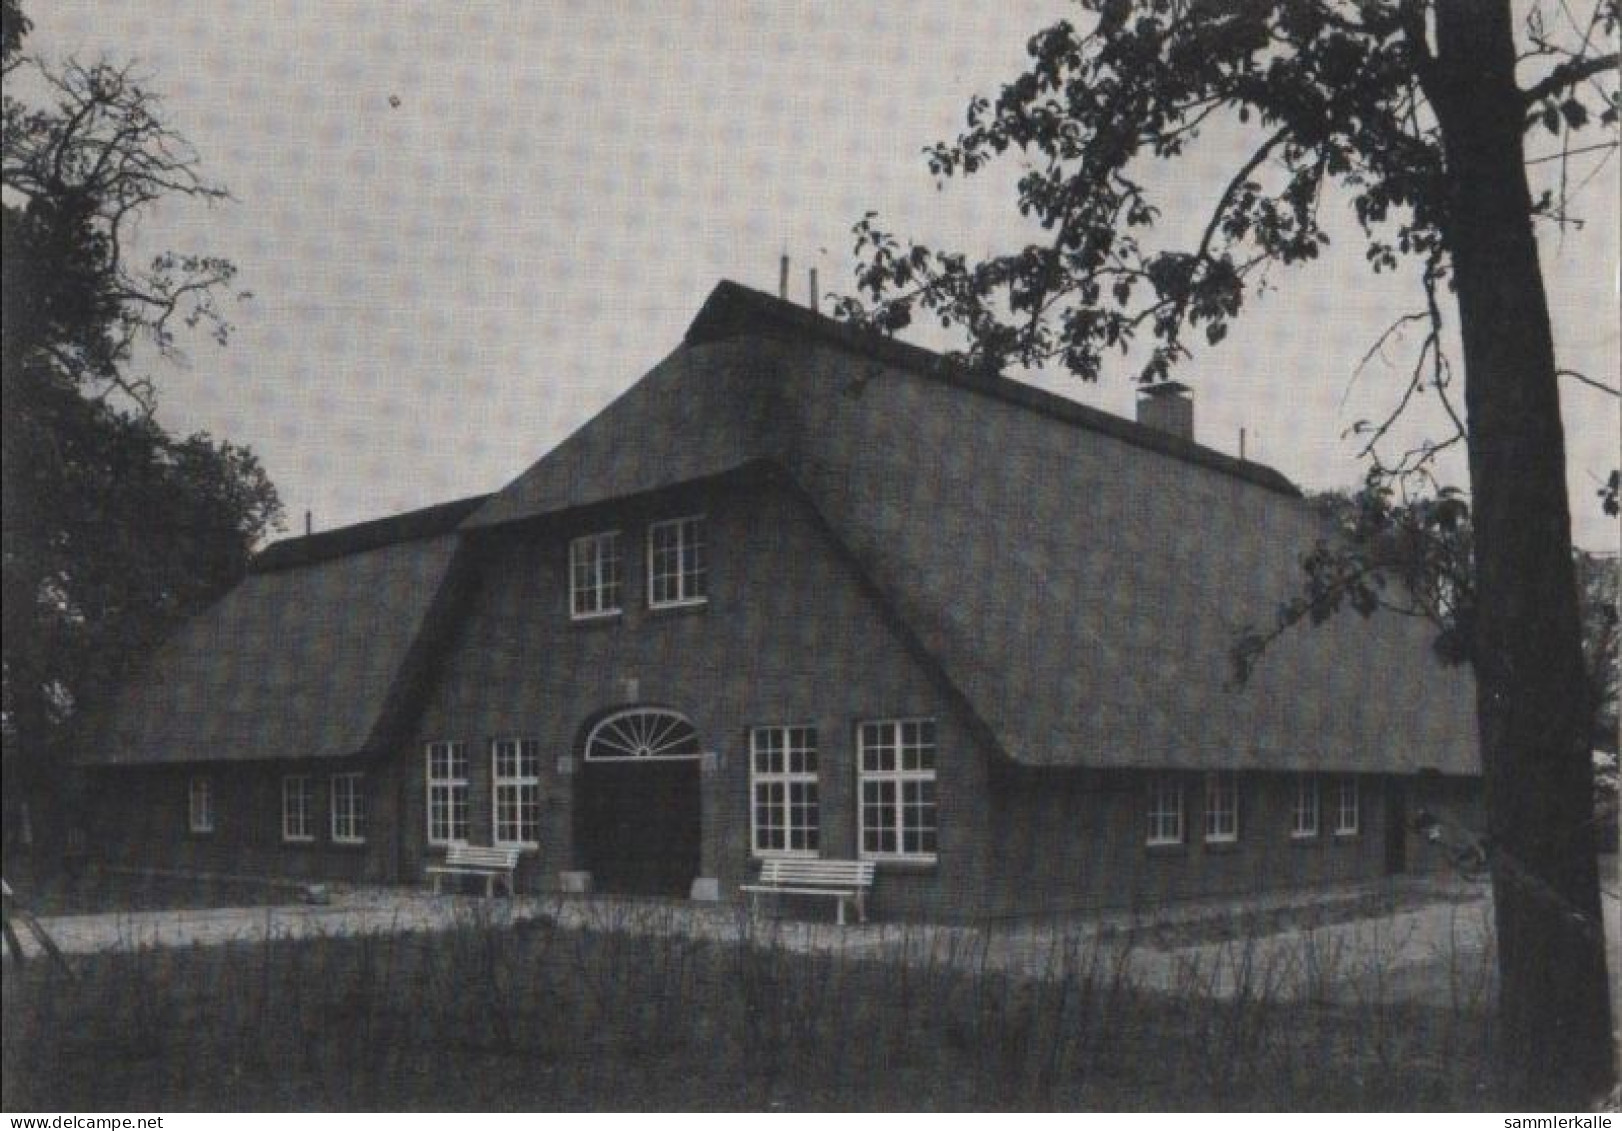 79616 - Bad Zwischenahn - Haus Feldhus - Ca. 1965 - Bad Zwischenahn